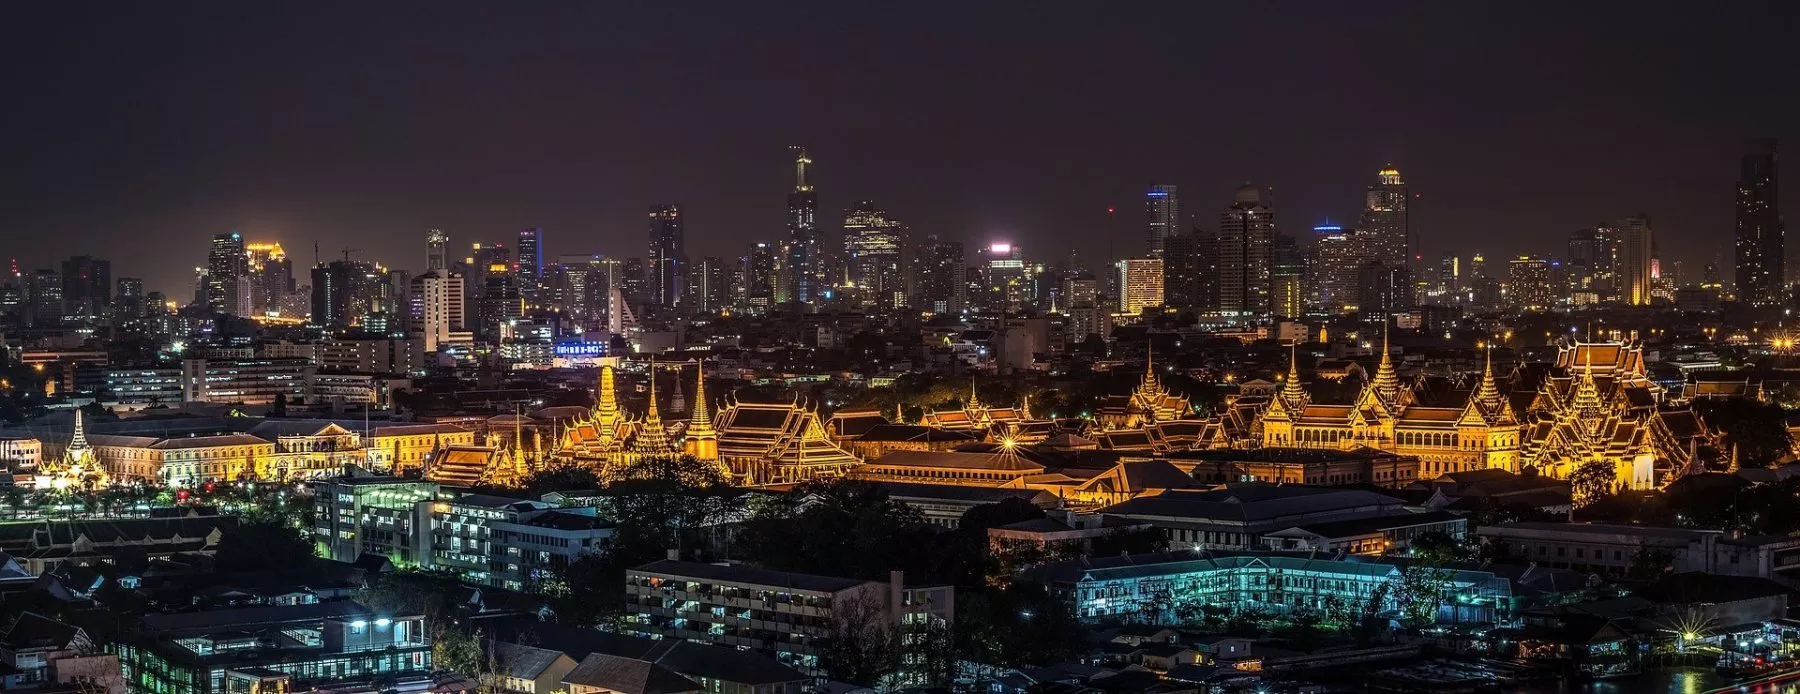 Upbit gelanceerd in Thailand, vlak nadat Bitkub verplicht werd te stoppen